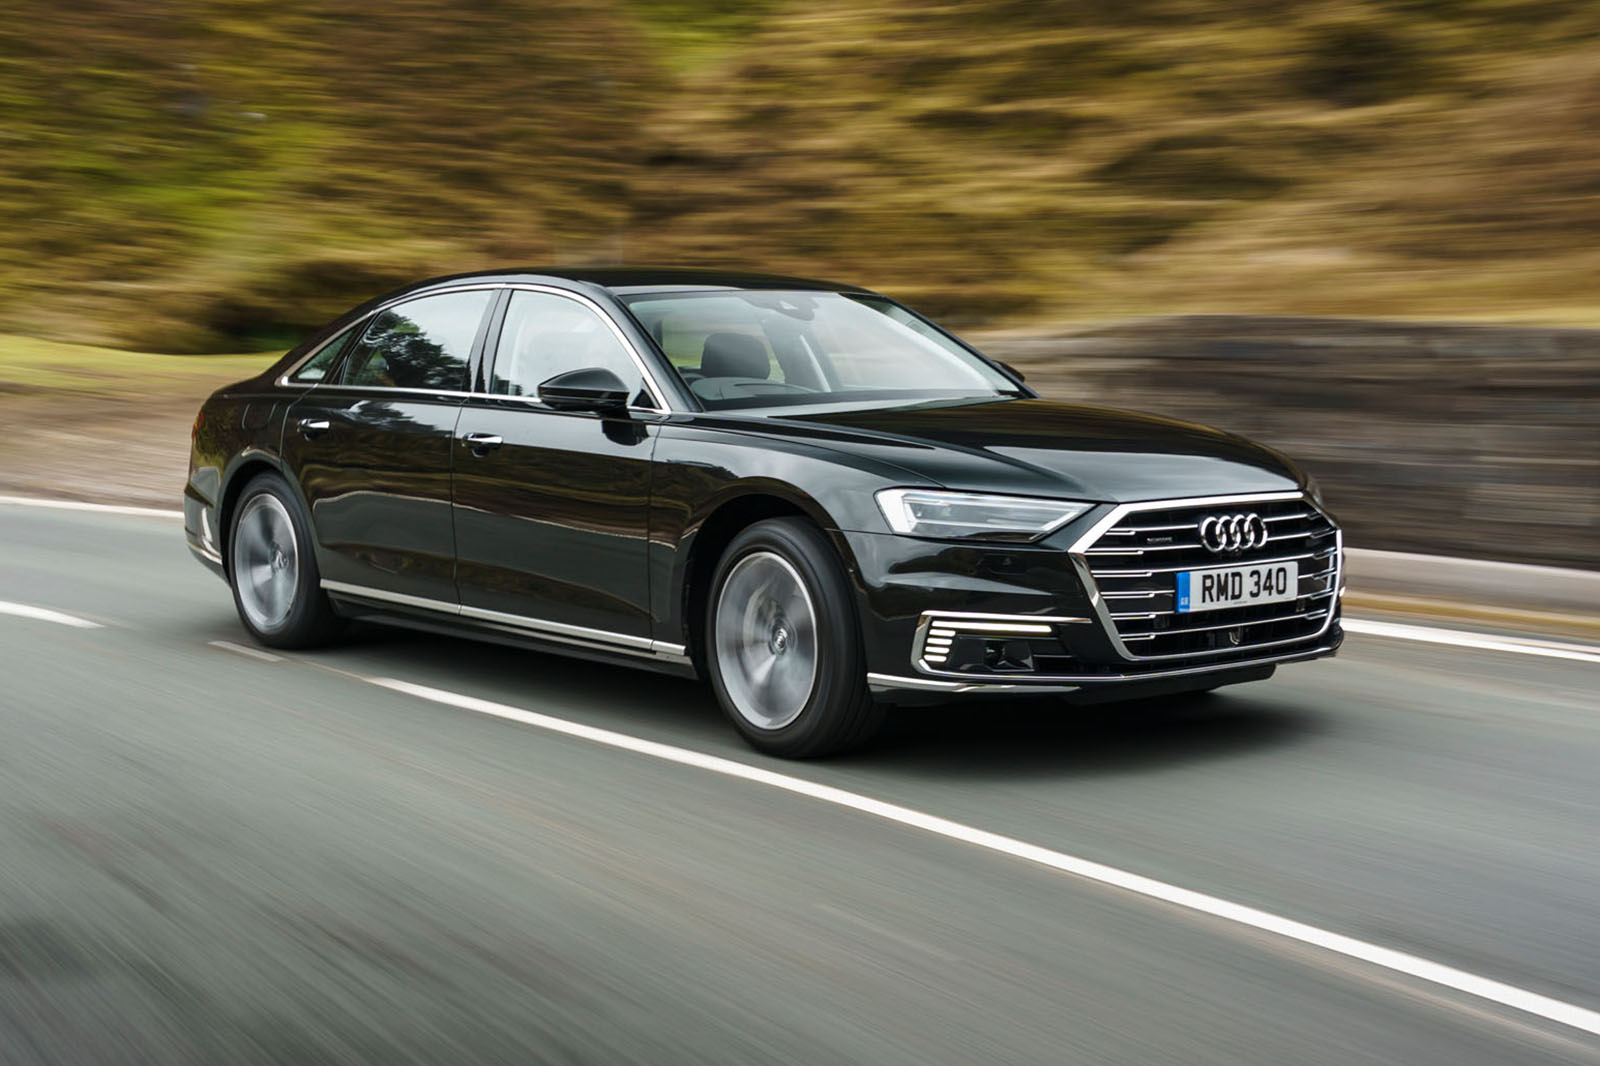 Audi A8 Hire Rates Dubai 